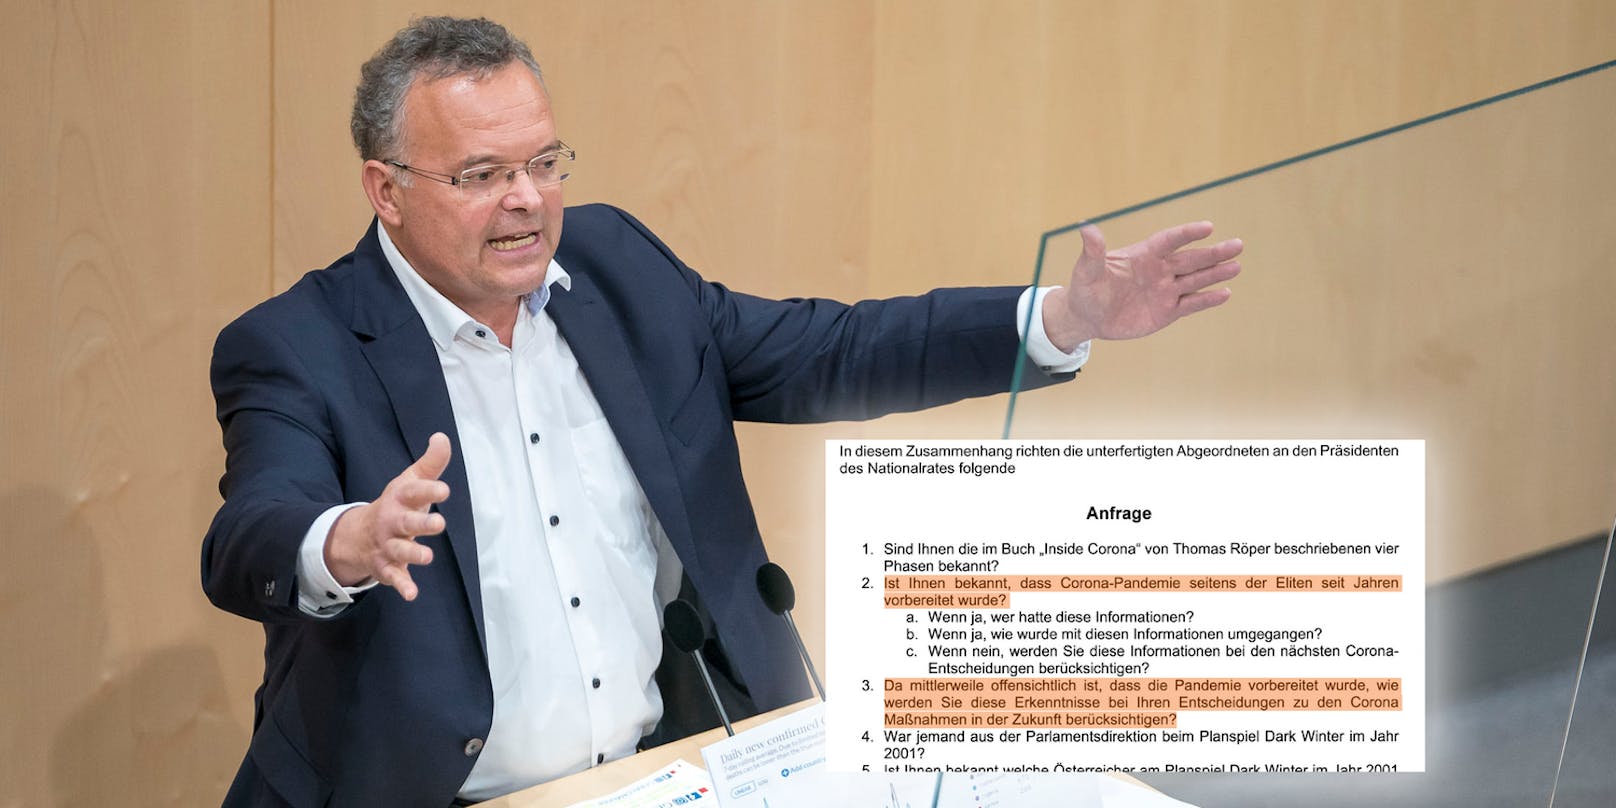 Der FPÖ-Abgeordnete Gerald Hauser sorgt mit seinen Aussagen immer wieder für Aufsehen.